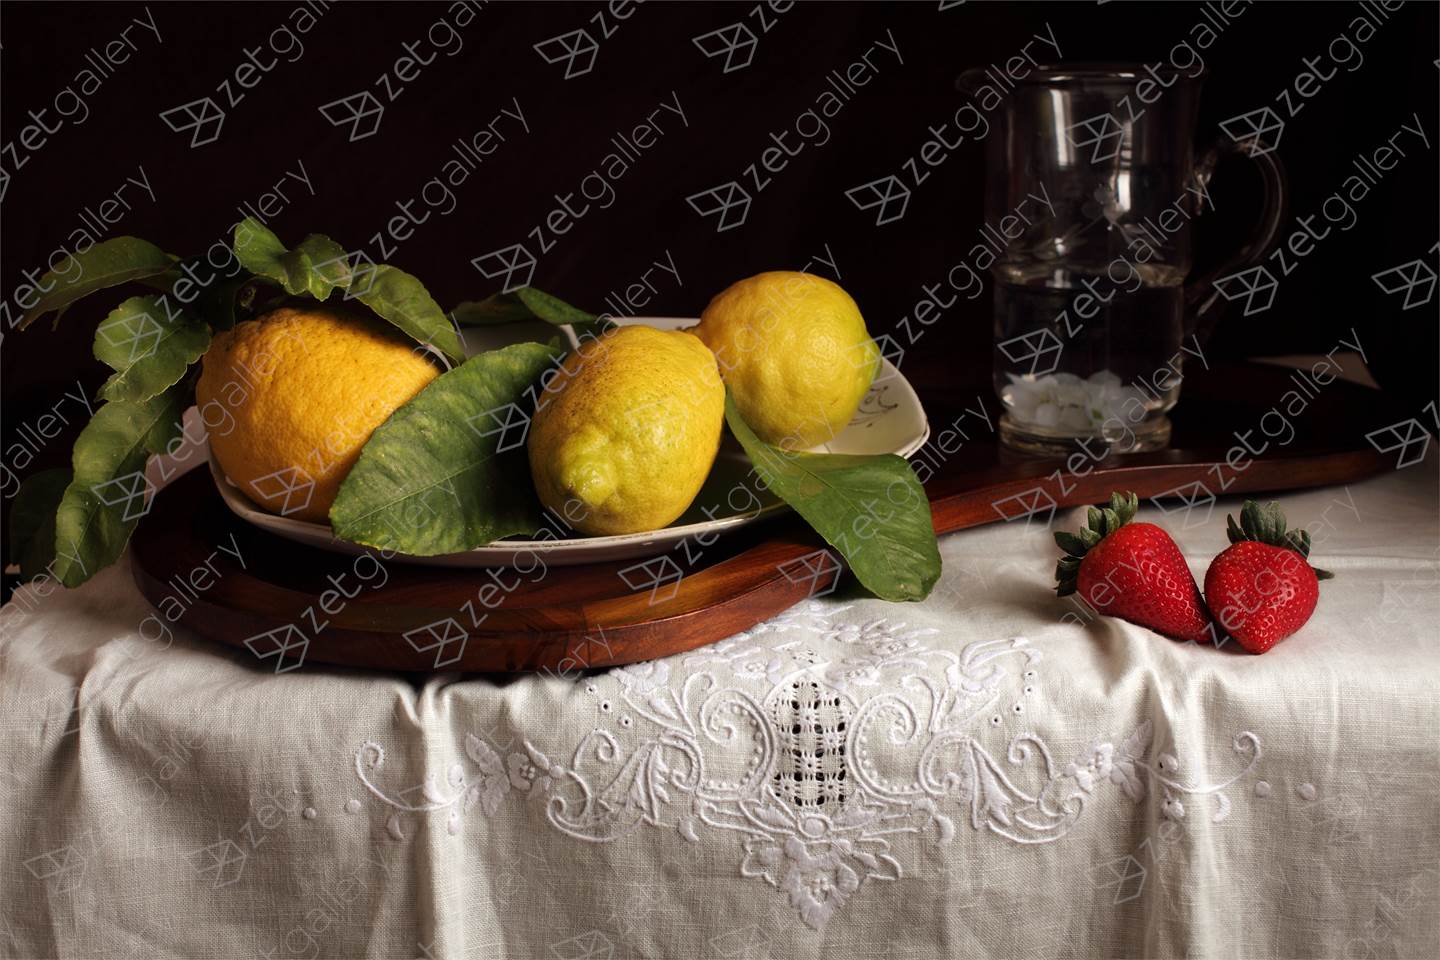 Bodegón de los limones y las fresas, original Still Life Digital Photography by Cecilia Gilabert